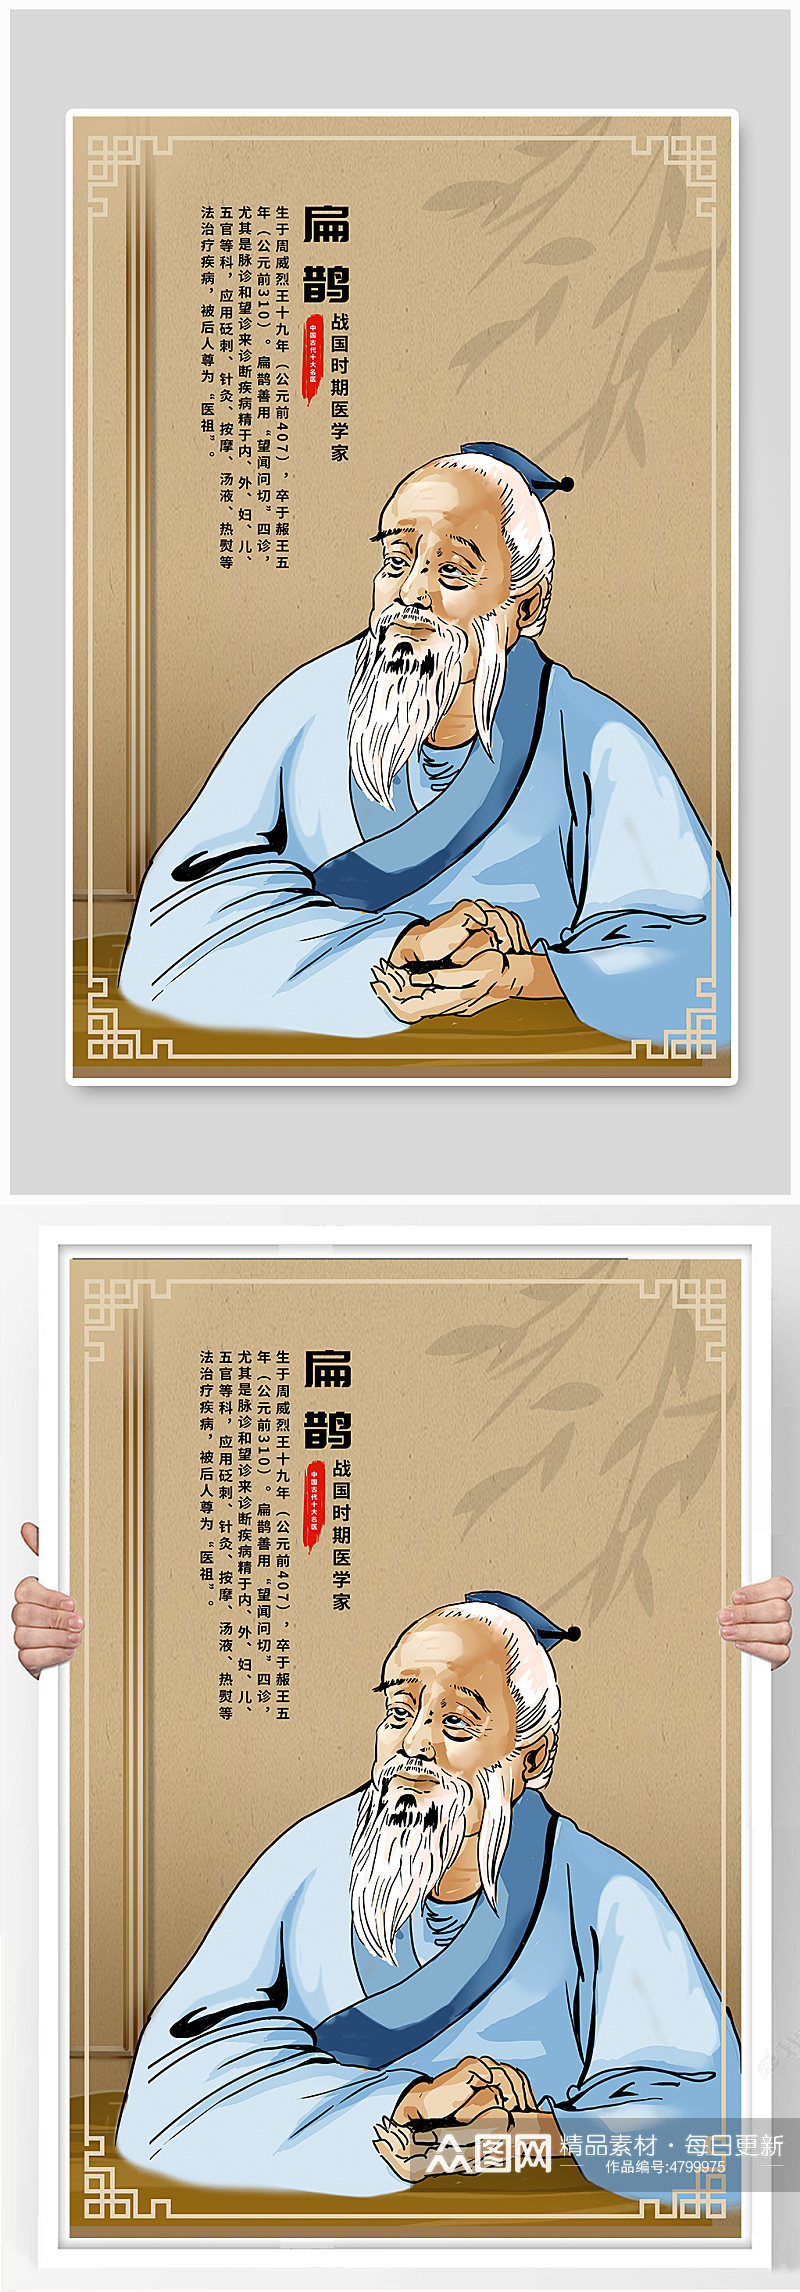 手绘扁鹊传统中医中华名医人物画像插画素材